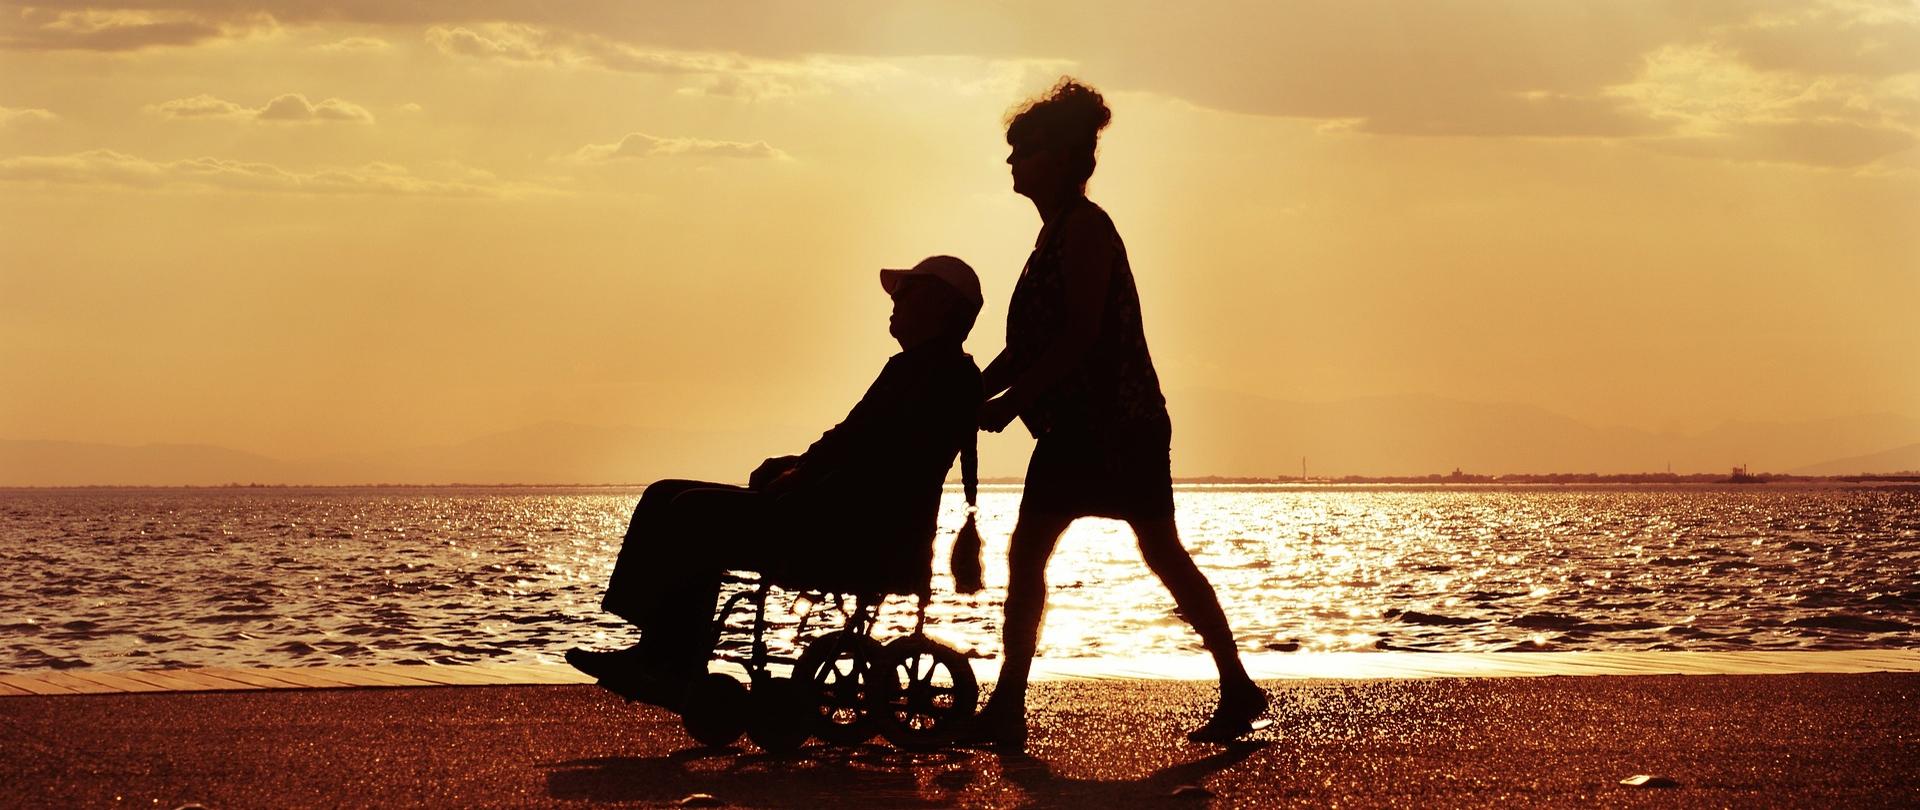 Zdjęcie kobiety pchającej wózek inwalidzki z siedzącym w nim starszym mężczyzną, w tle widok z plaży na zatokę i zachód słońca